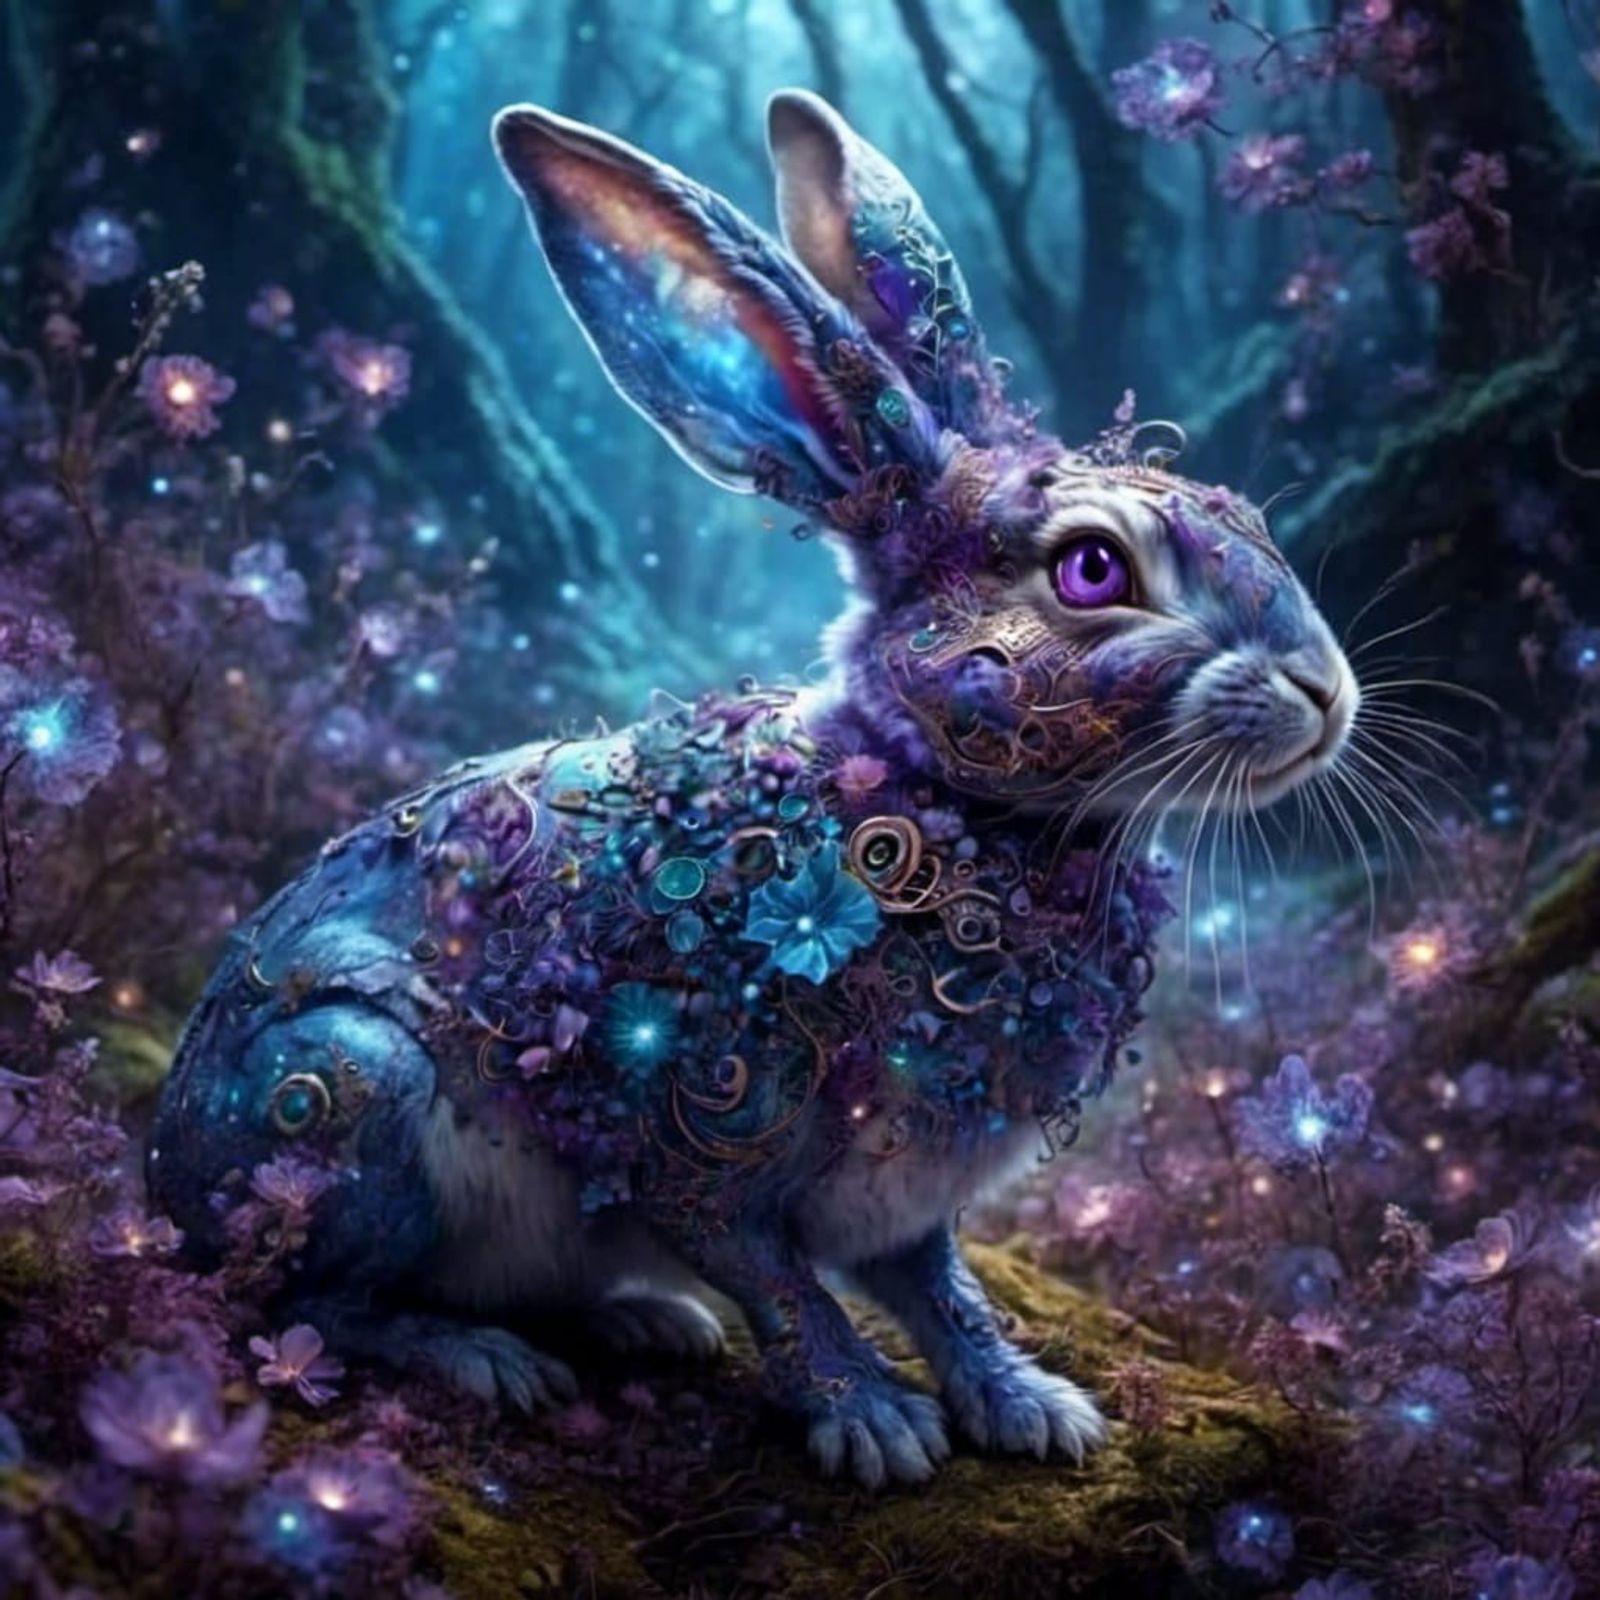 nebula bunny